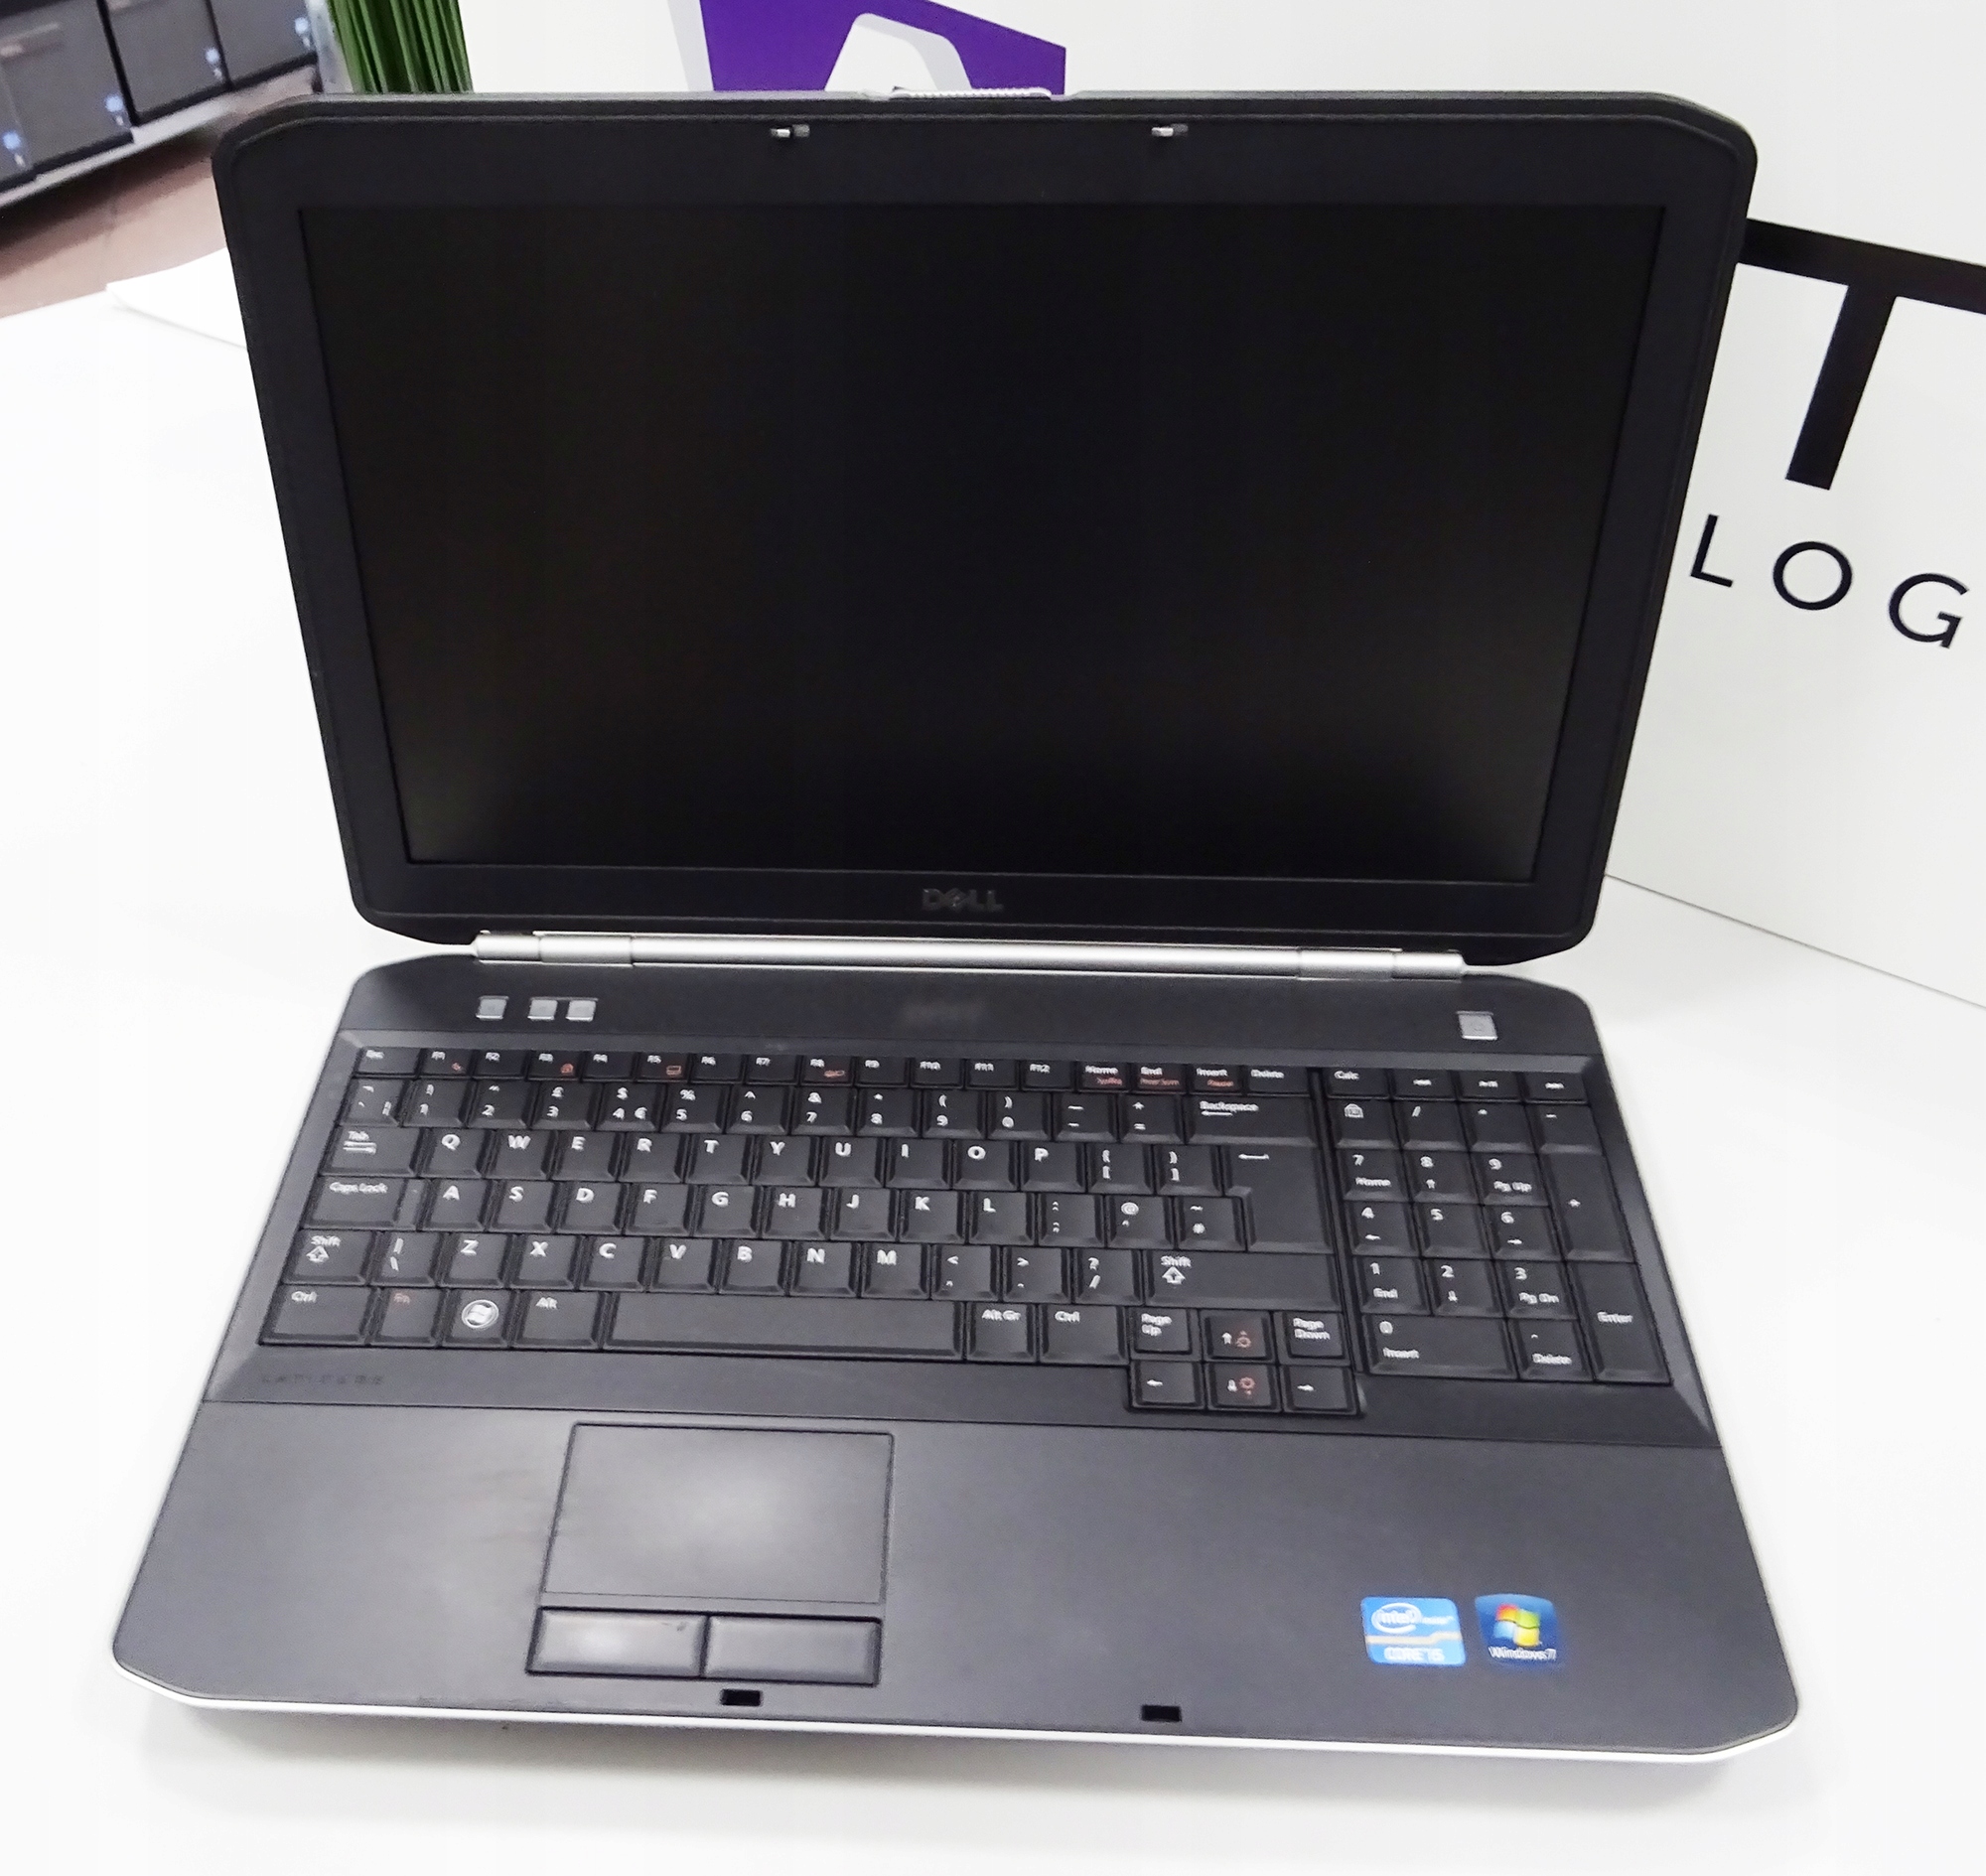 Laptop Dell Latitude E5520 I5 4gb 160gb Win7 7175464681 Oficjalne Archiwum Allegro 9373